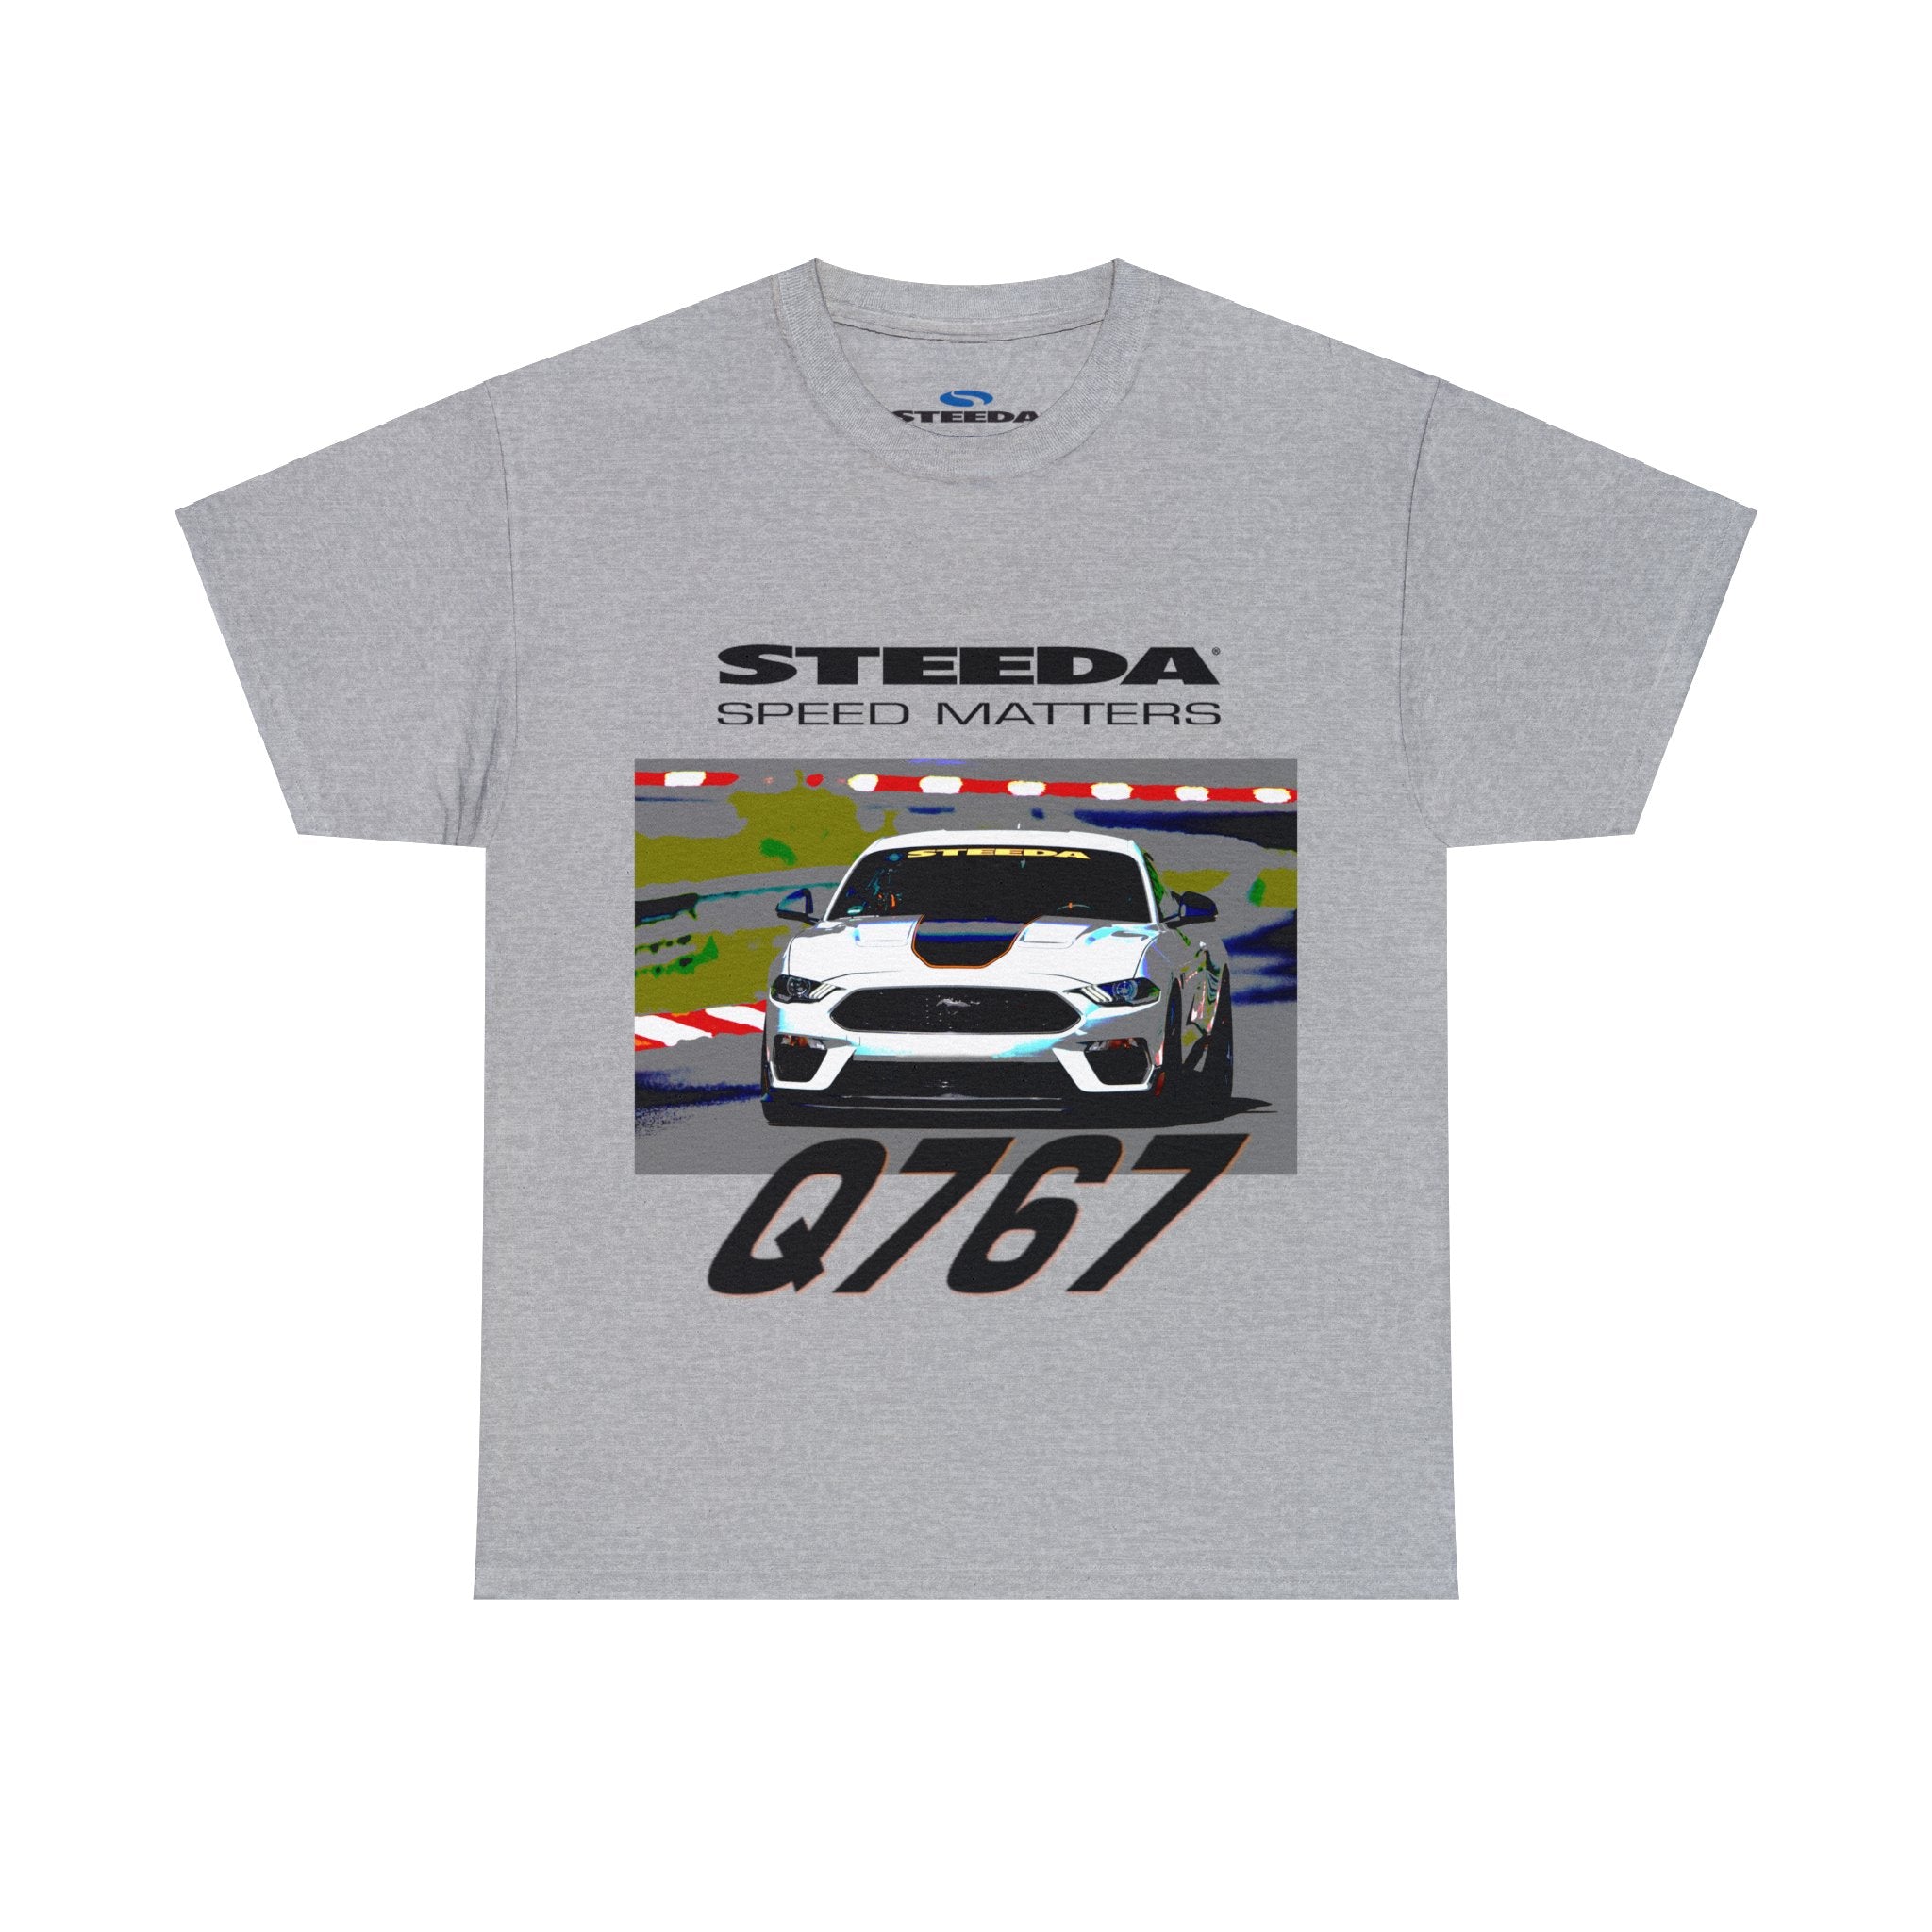 Steda Q767 Mach 1 T-shirt